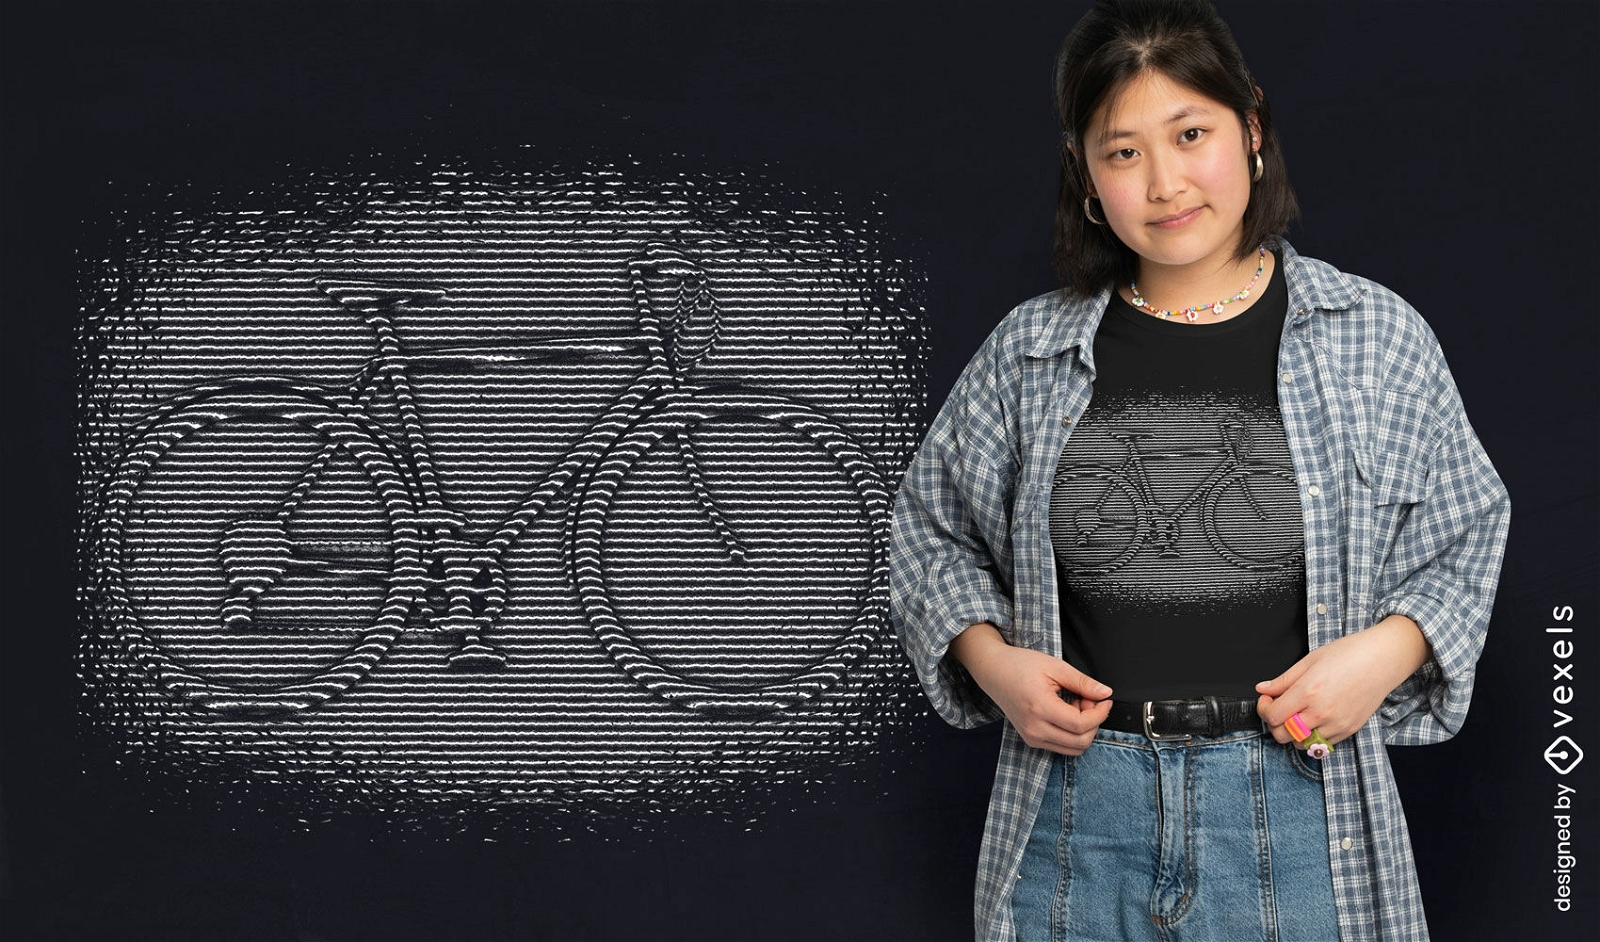 Fahrrad optische T?uschung T-Shirt-Design